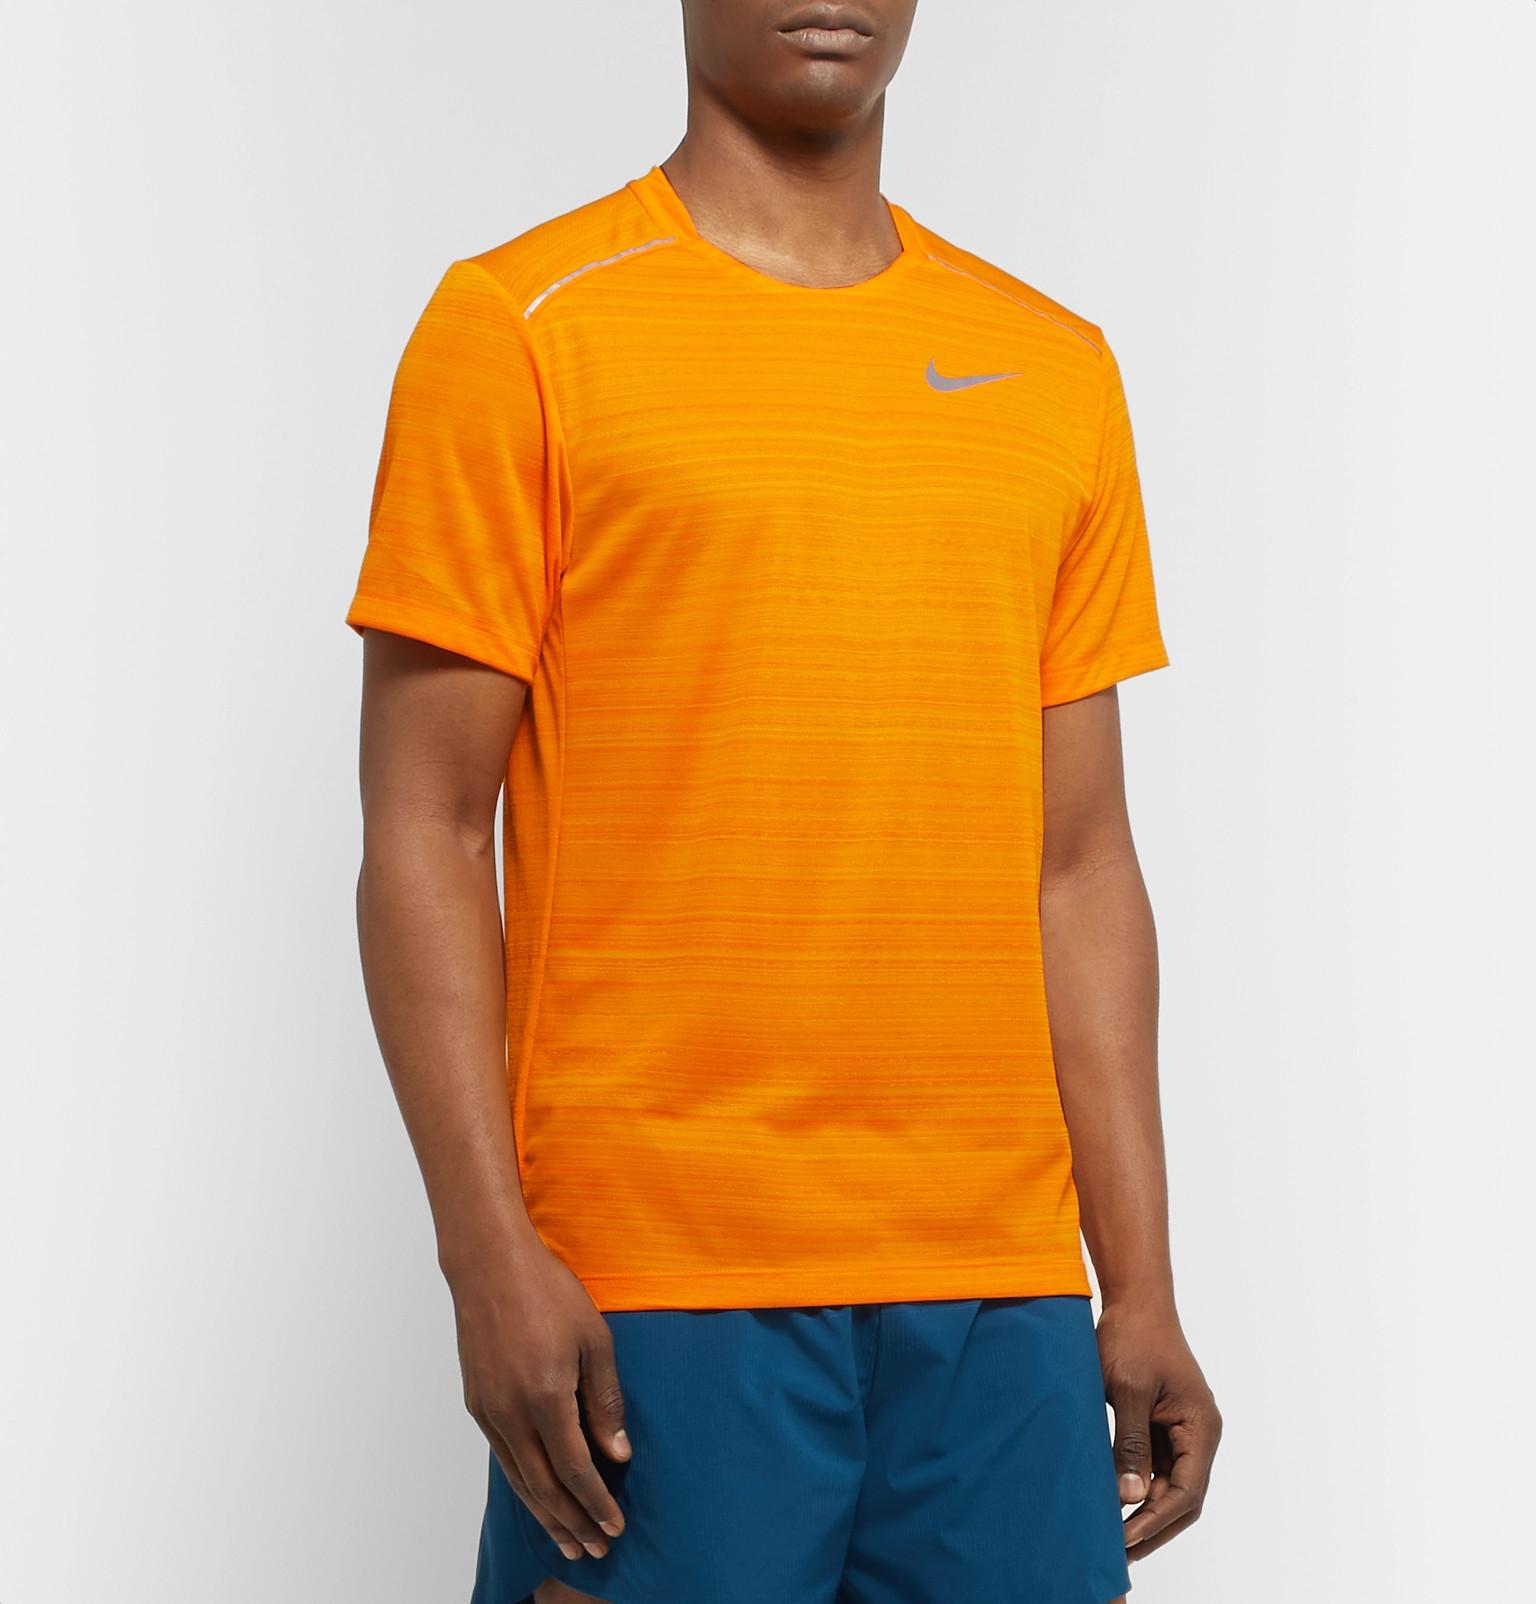 orange nike t shirt,OFF 67%www.jtecrc.com